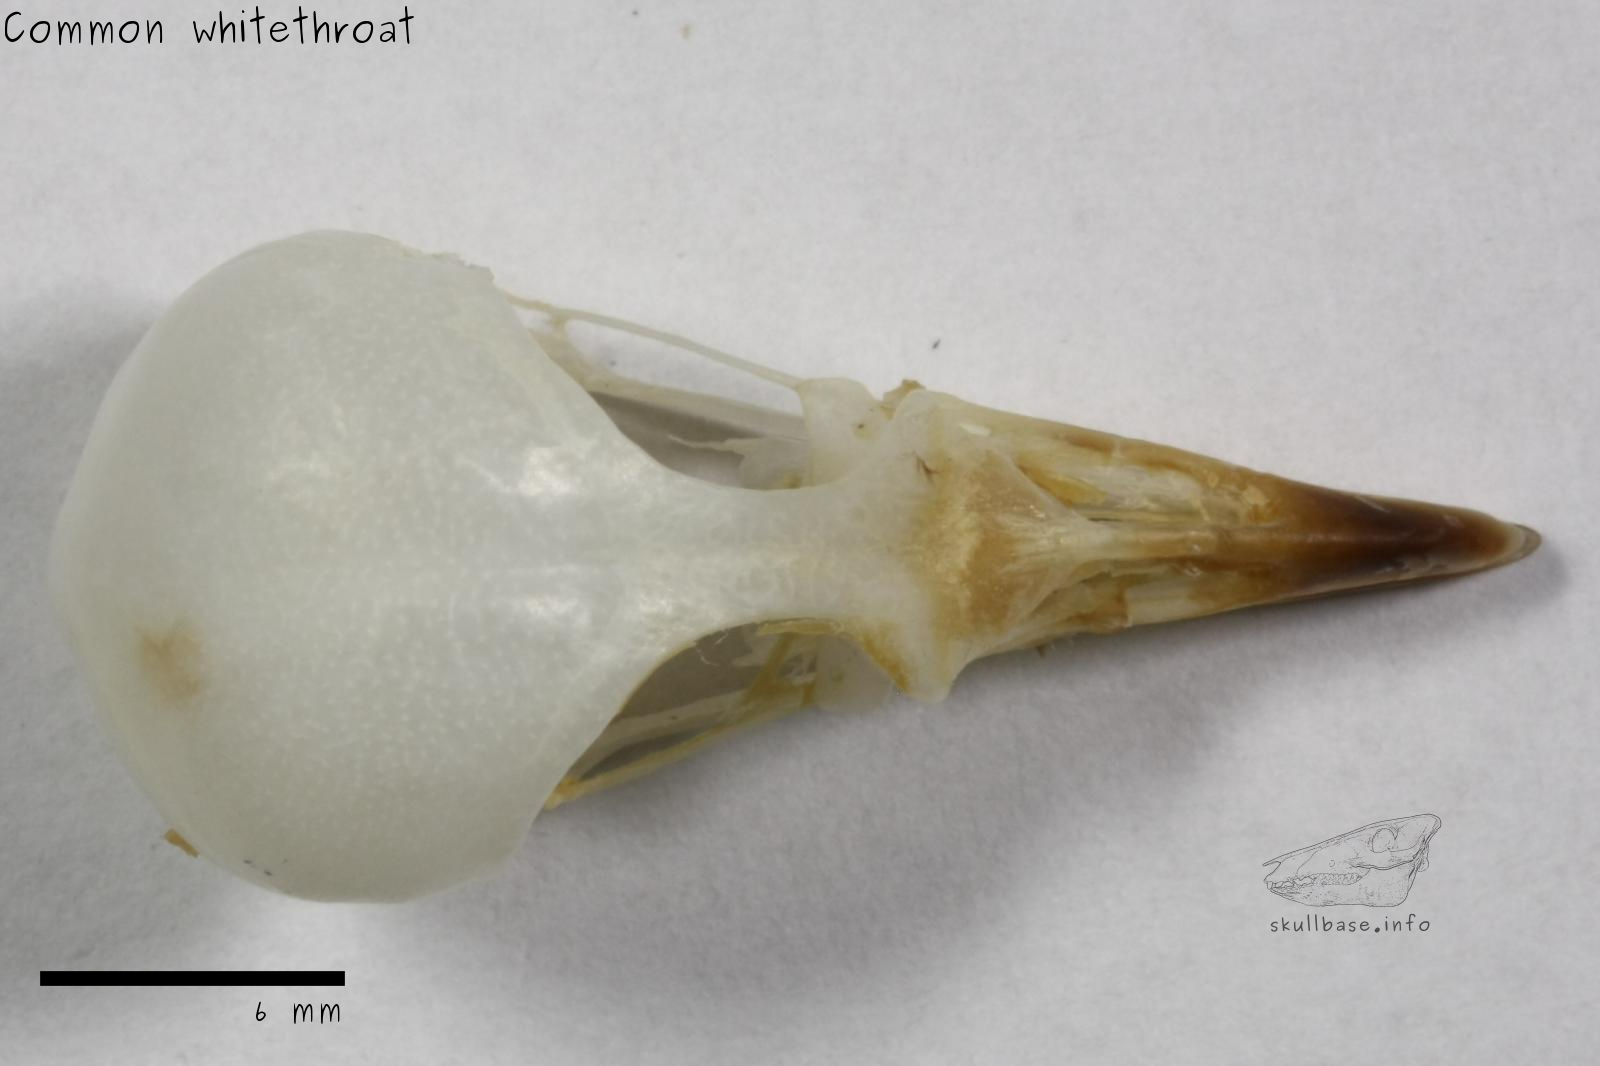 Common whitethroat (Sylvia communis) skull dorsal view